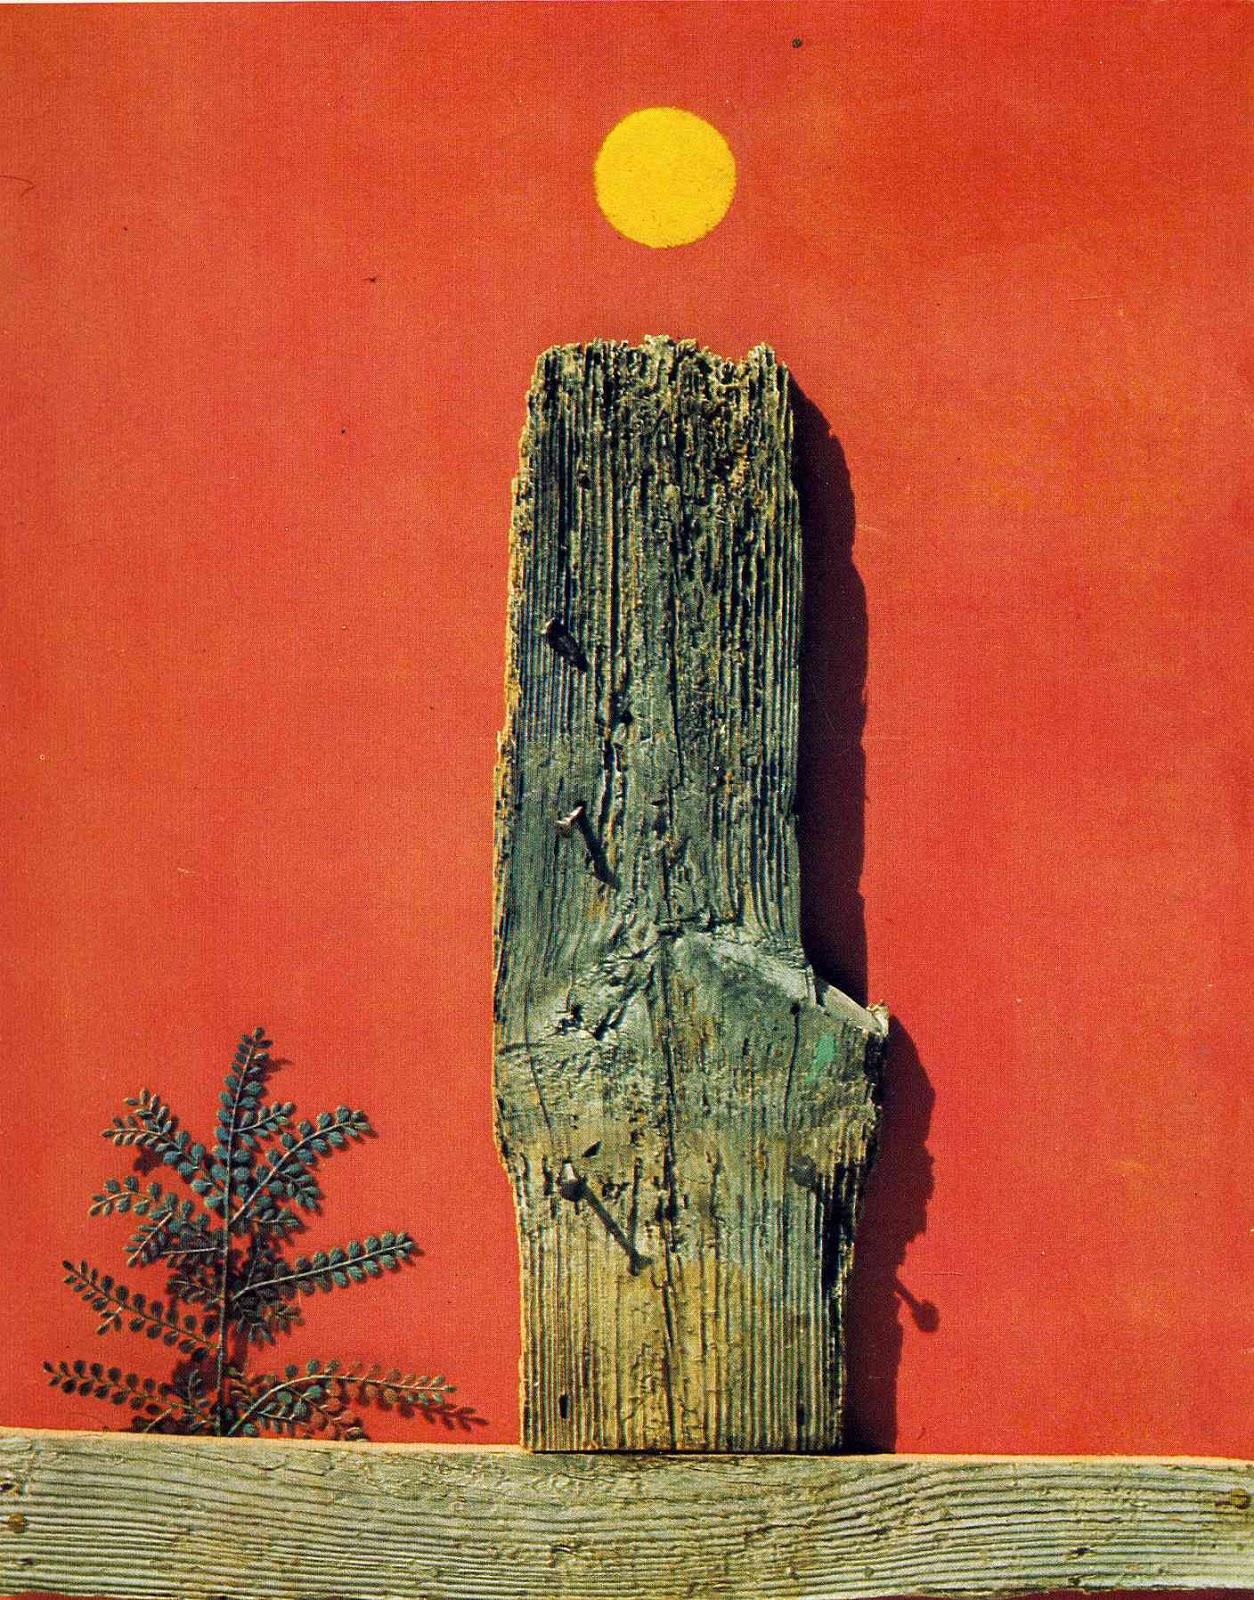 Max+Ernst-1891-1976 (69).jpg